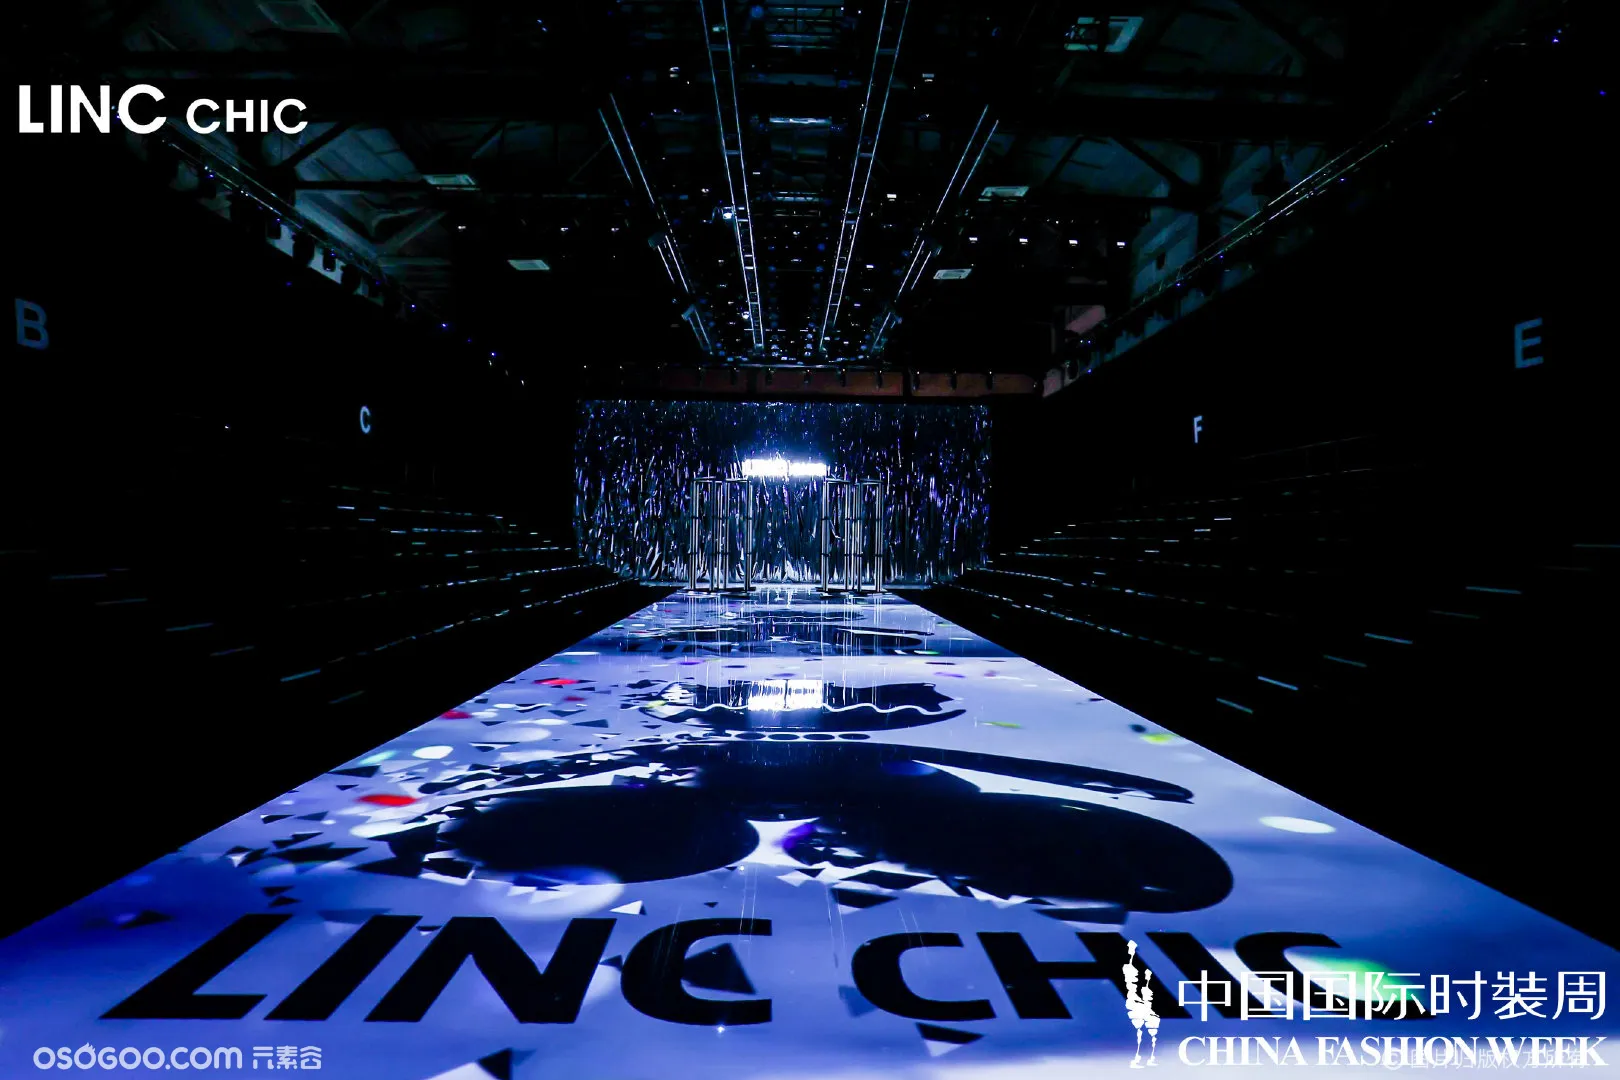 中国国际时装秀-LINC Chic“硬糖派对”